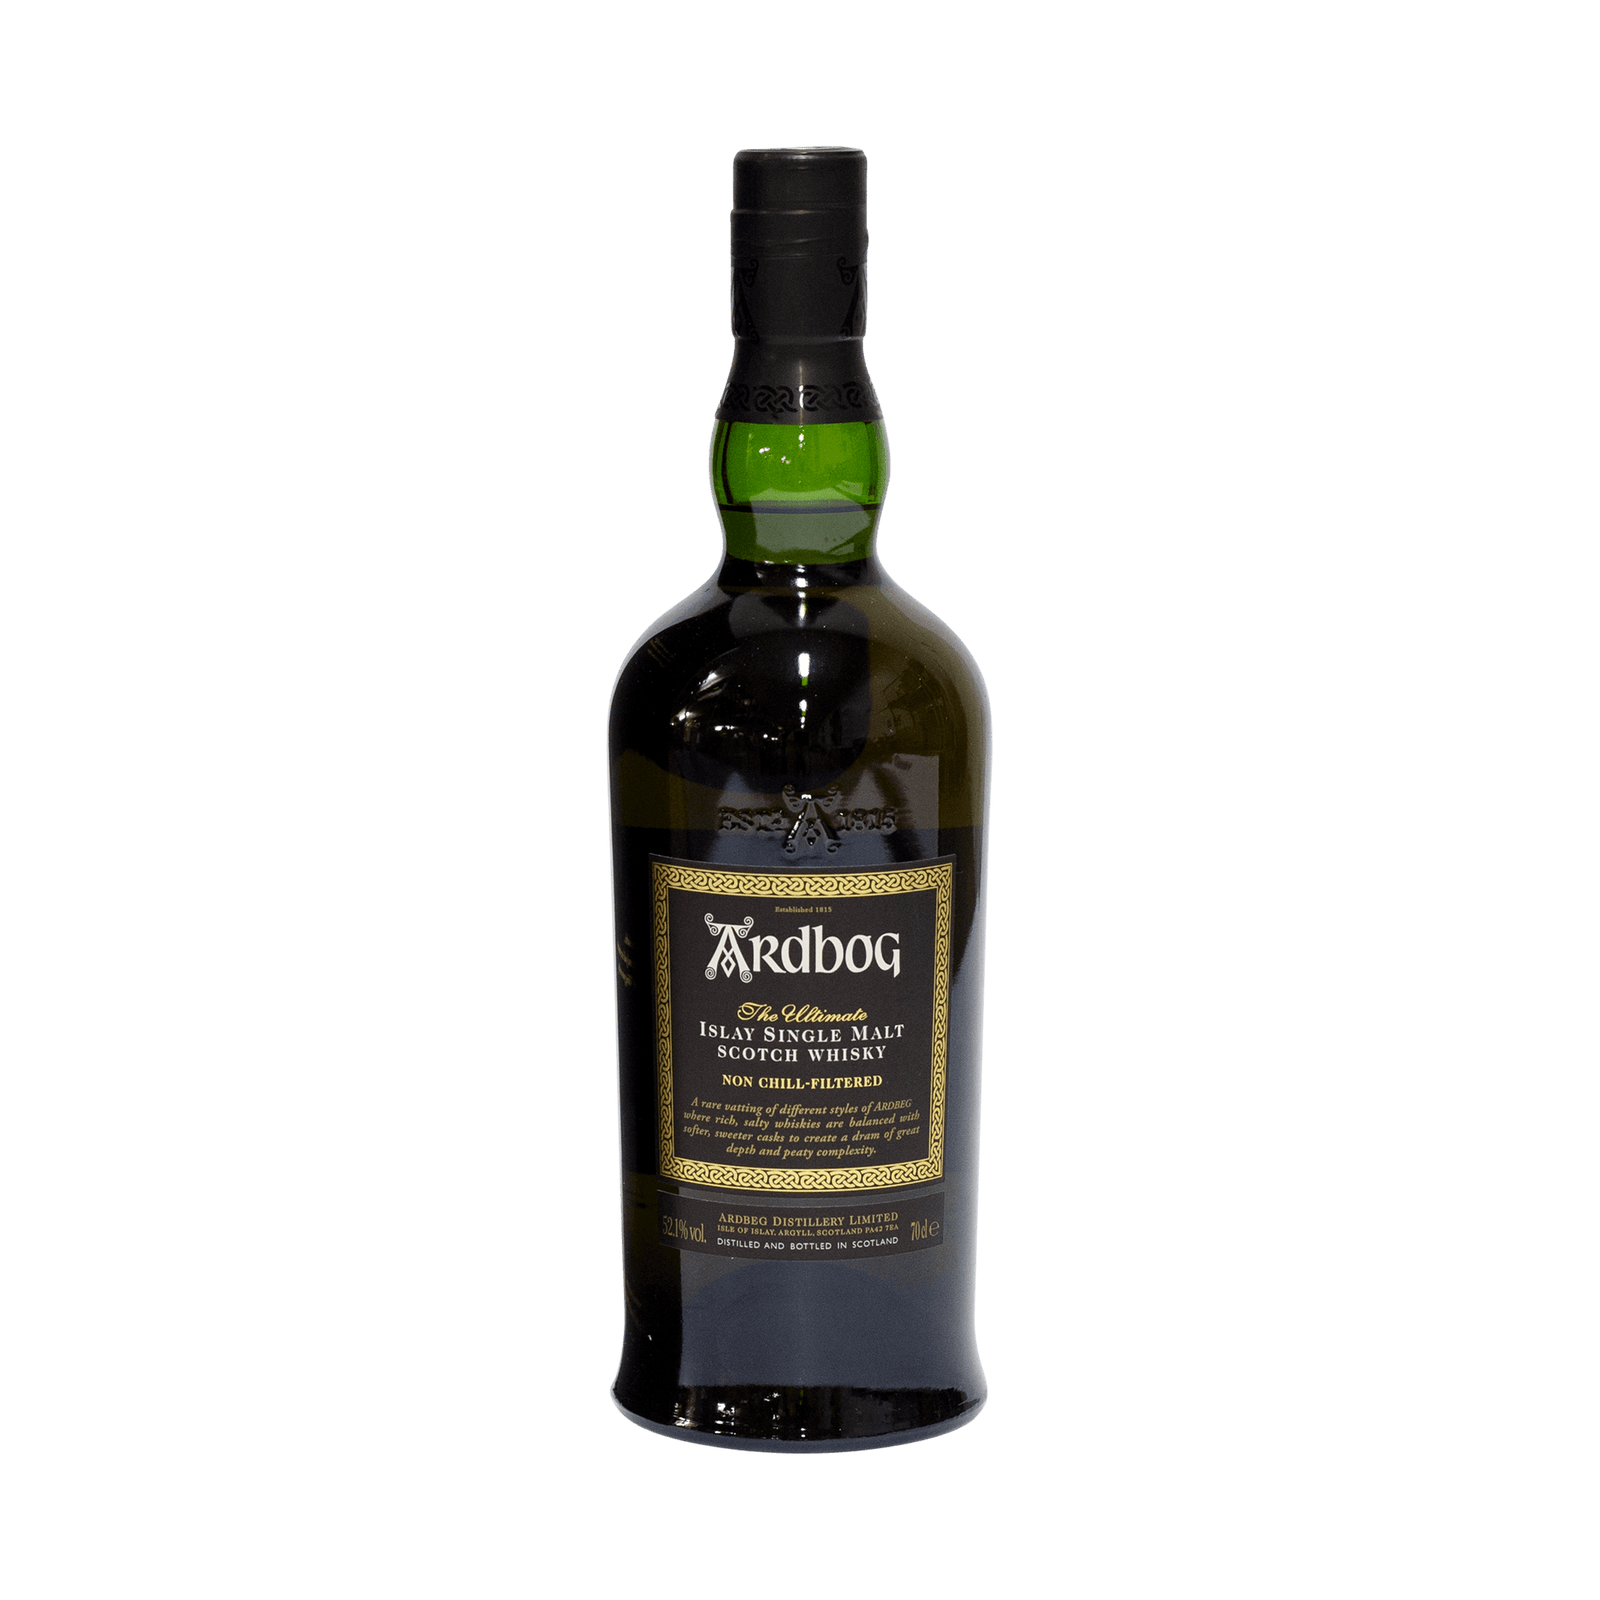 Ardbeg - Whisky Business